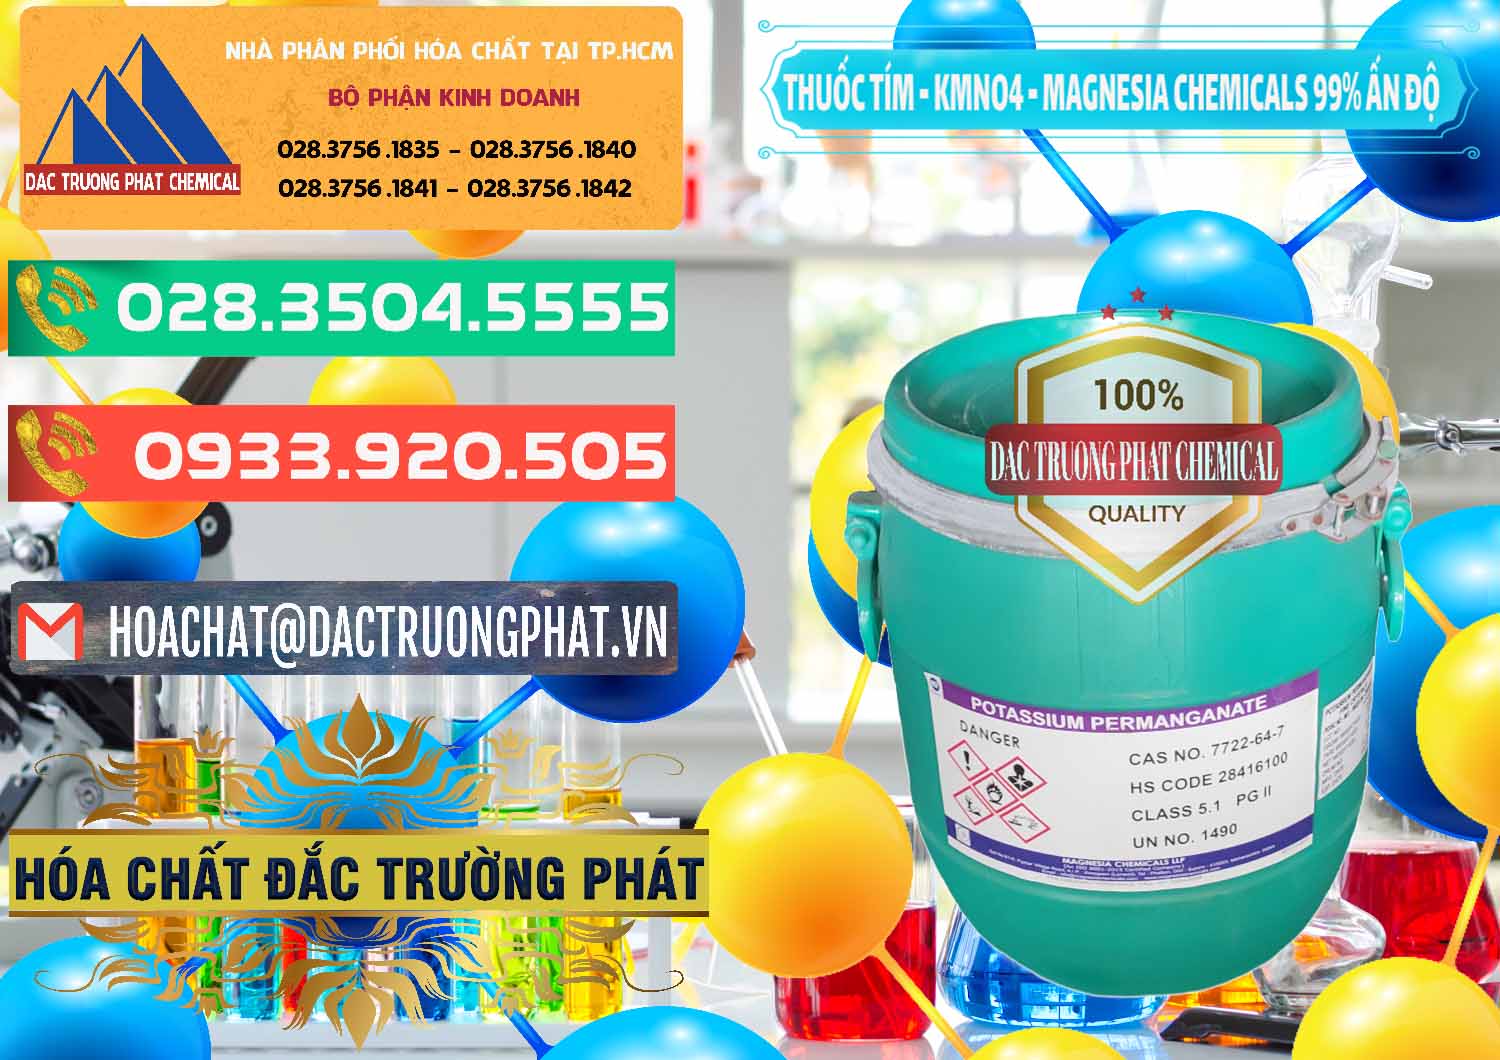 Nơi cung ứng & bán Thuốc Tím - KMNO4 Magnesia Chemicals 99% Ấn Độ India - 0251 - Nhà nhập khẩu _ cung cấp hóa chất tại TP.HCM - congtyhoachat.com.vn